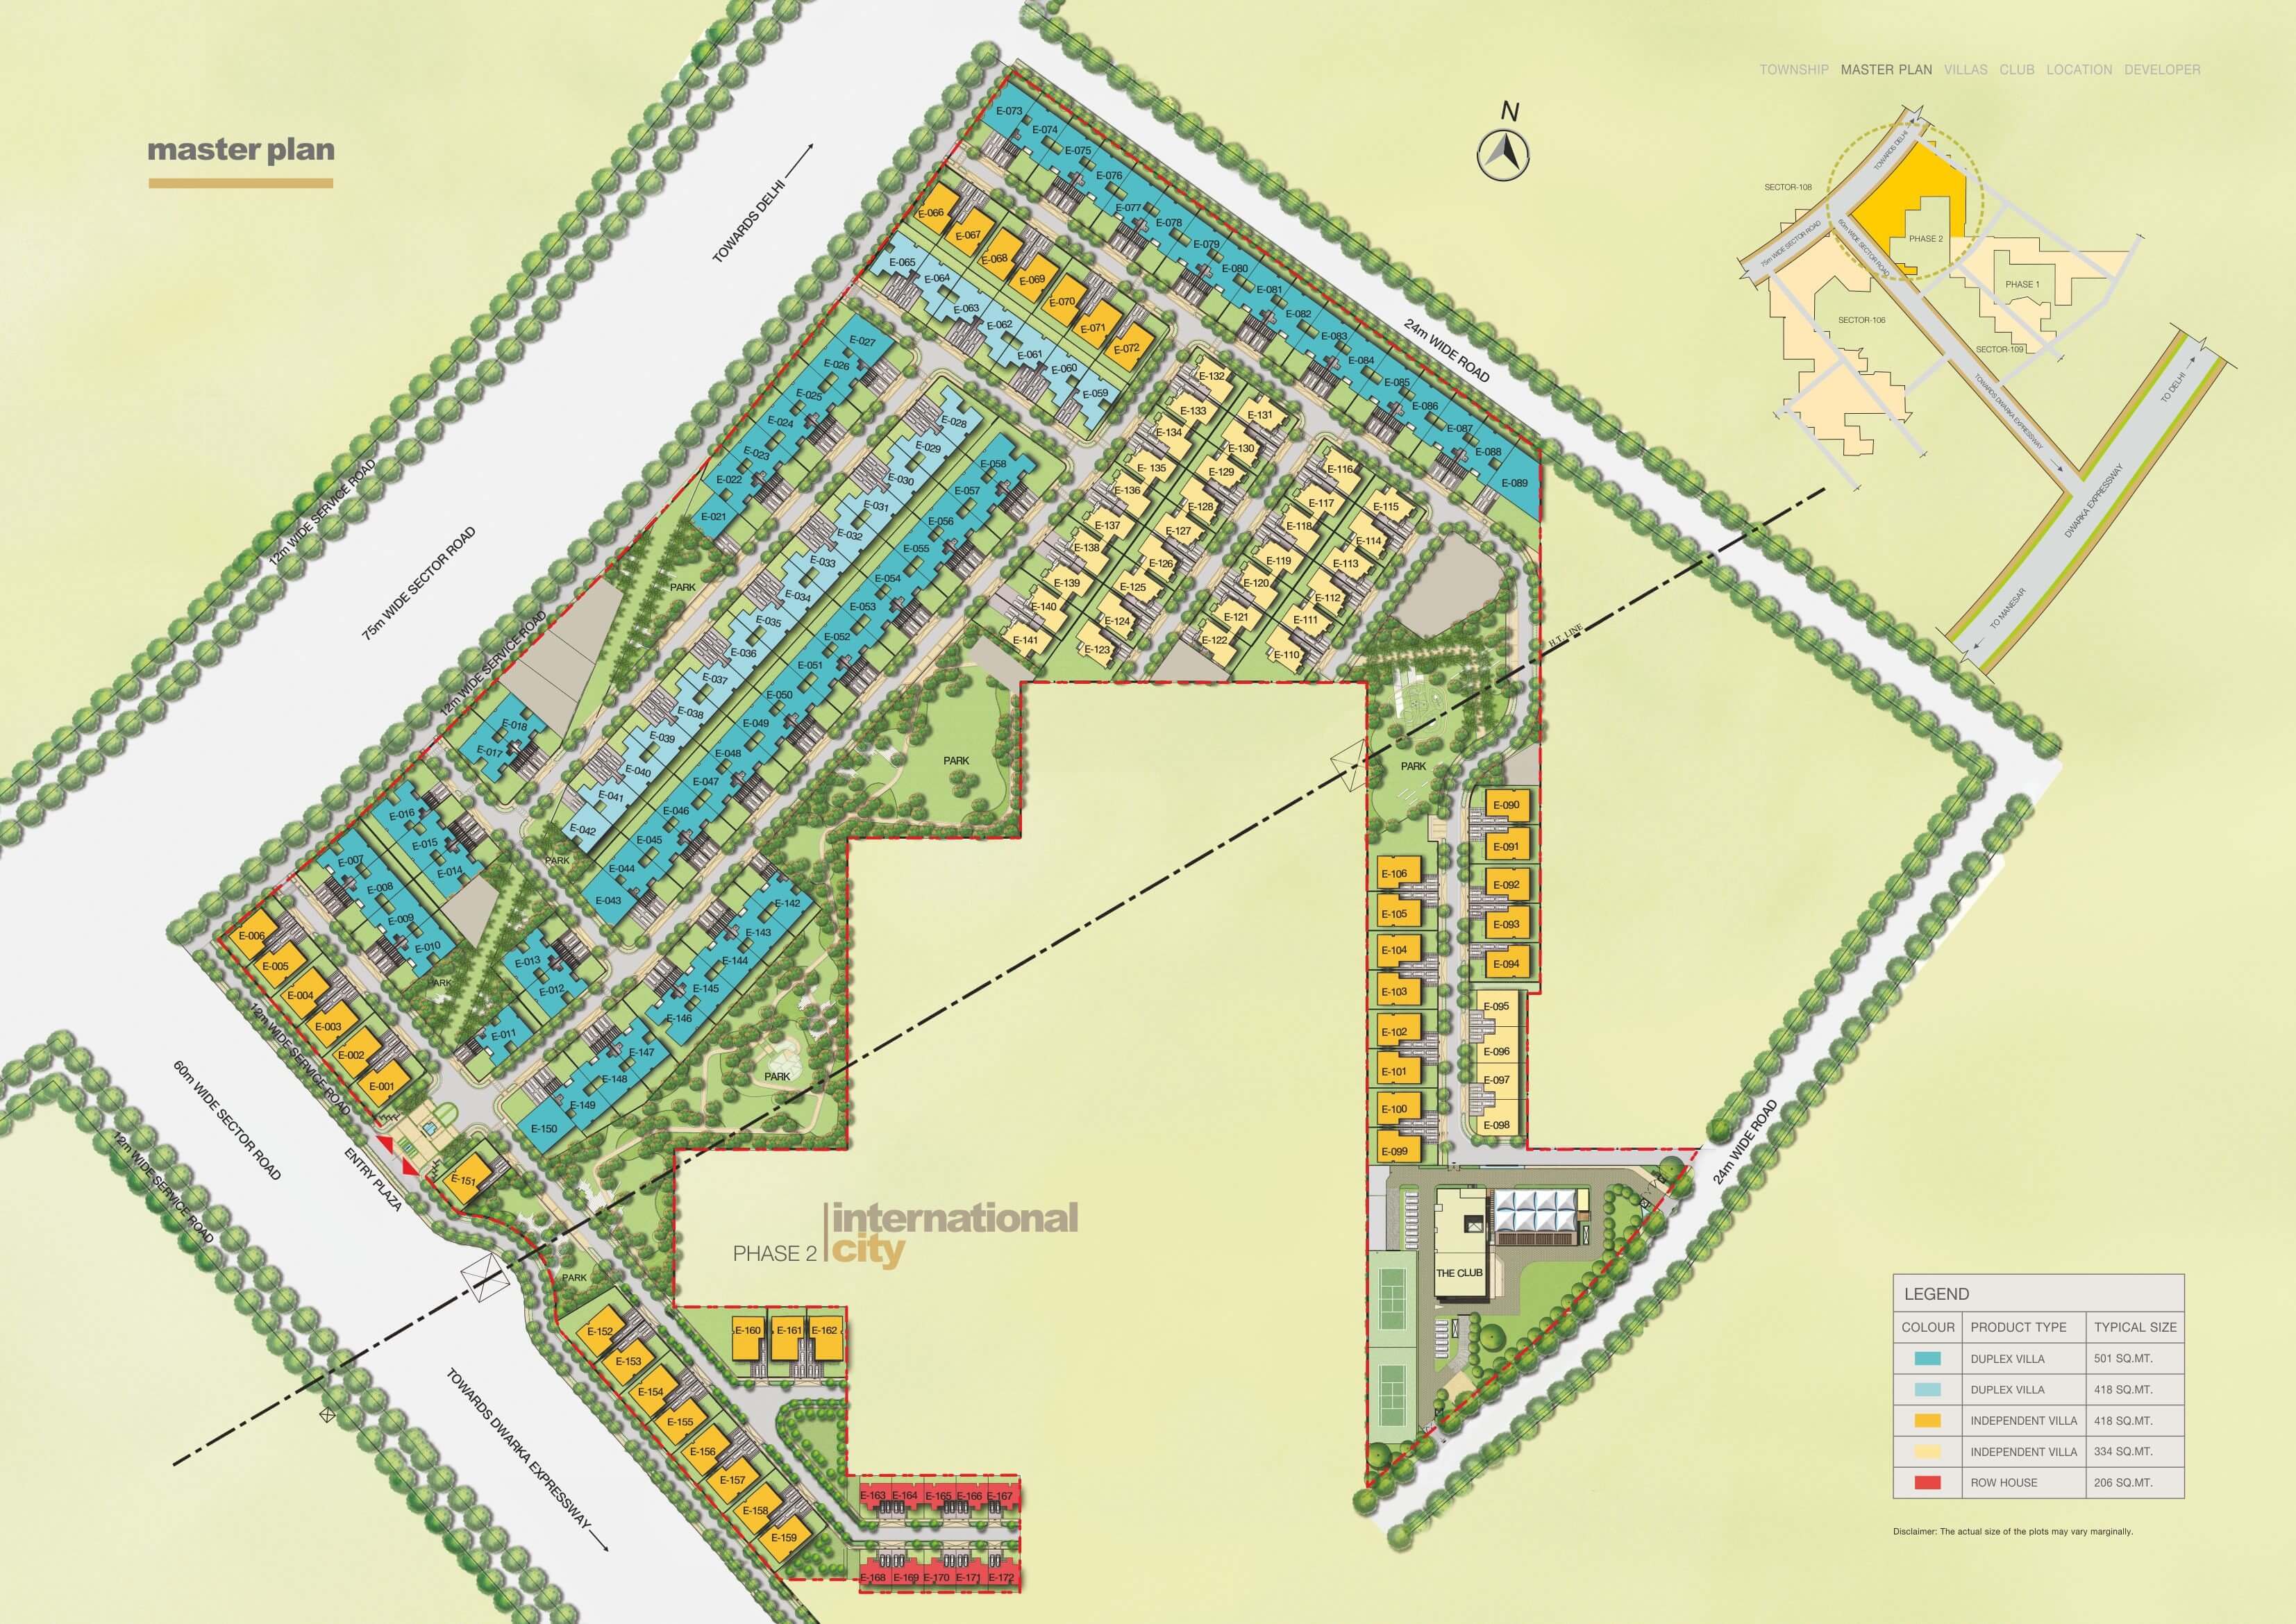 Sobha International City Phase 2 Master Plan